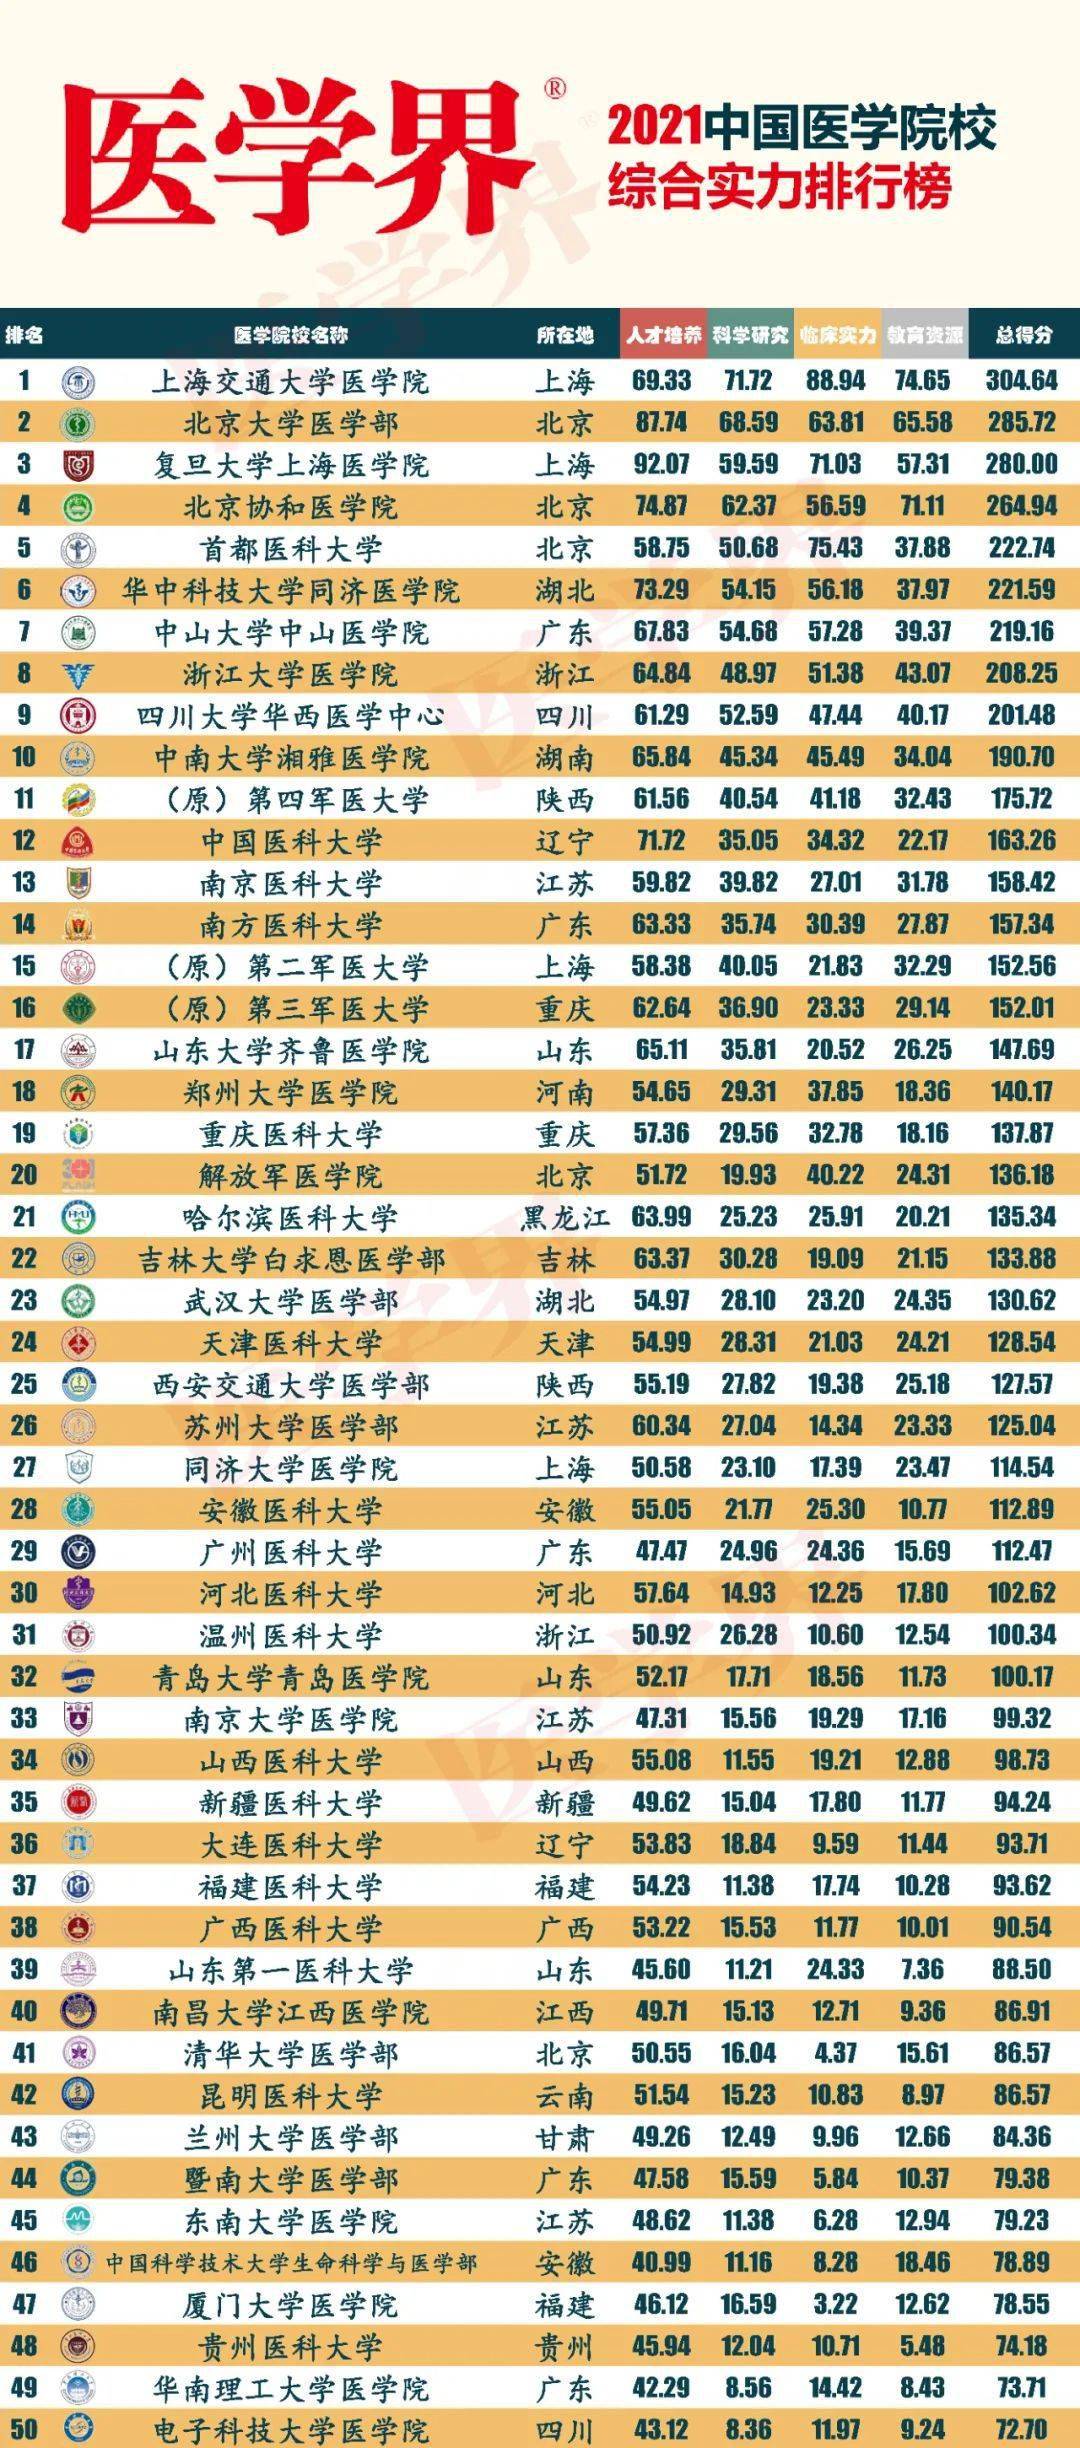 中国军校排行榜_世界上最好的四所军校,西点领衔,中国的军校没有上榜